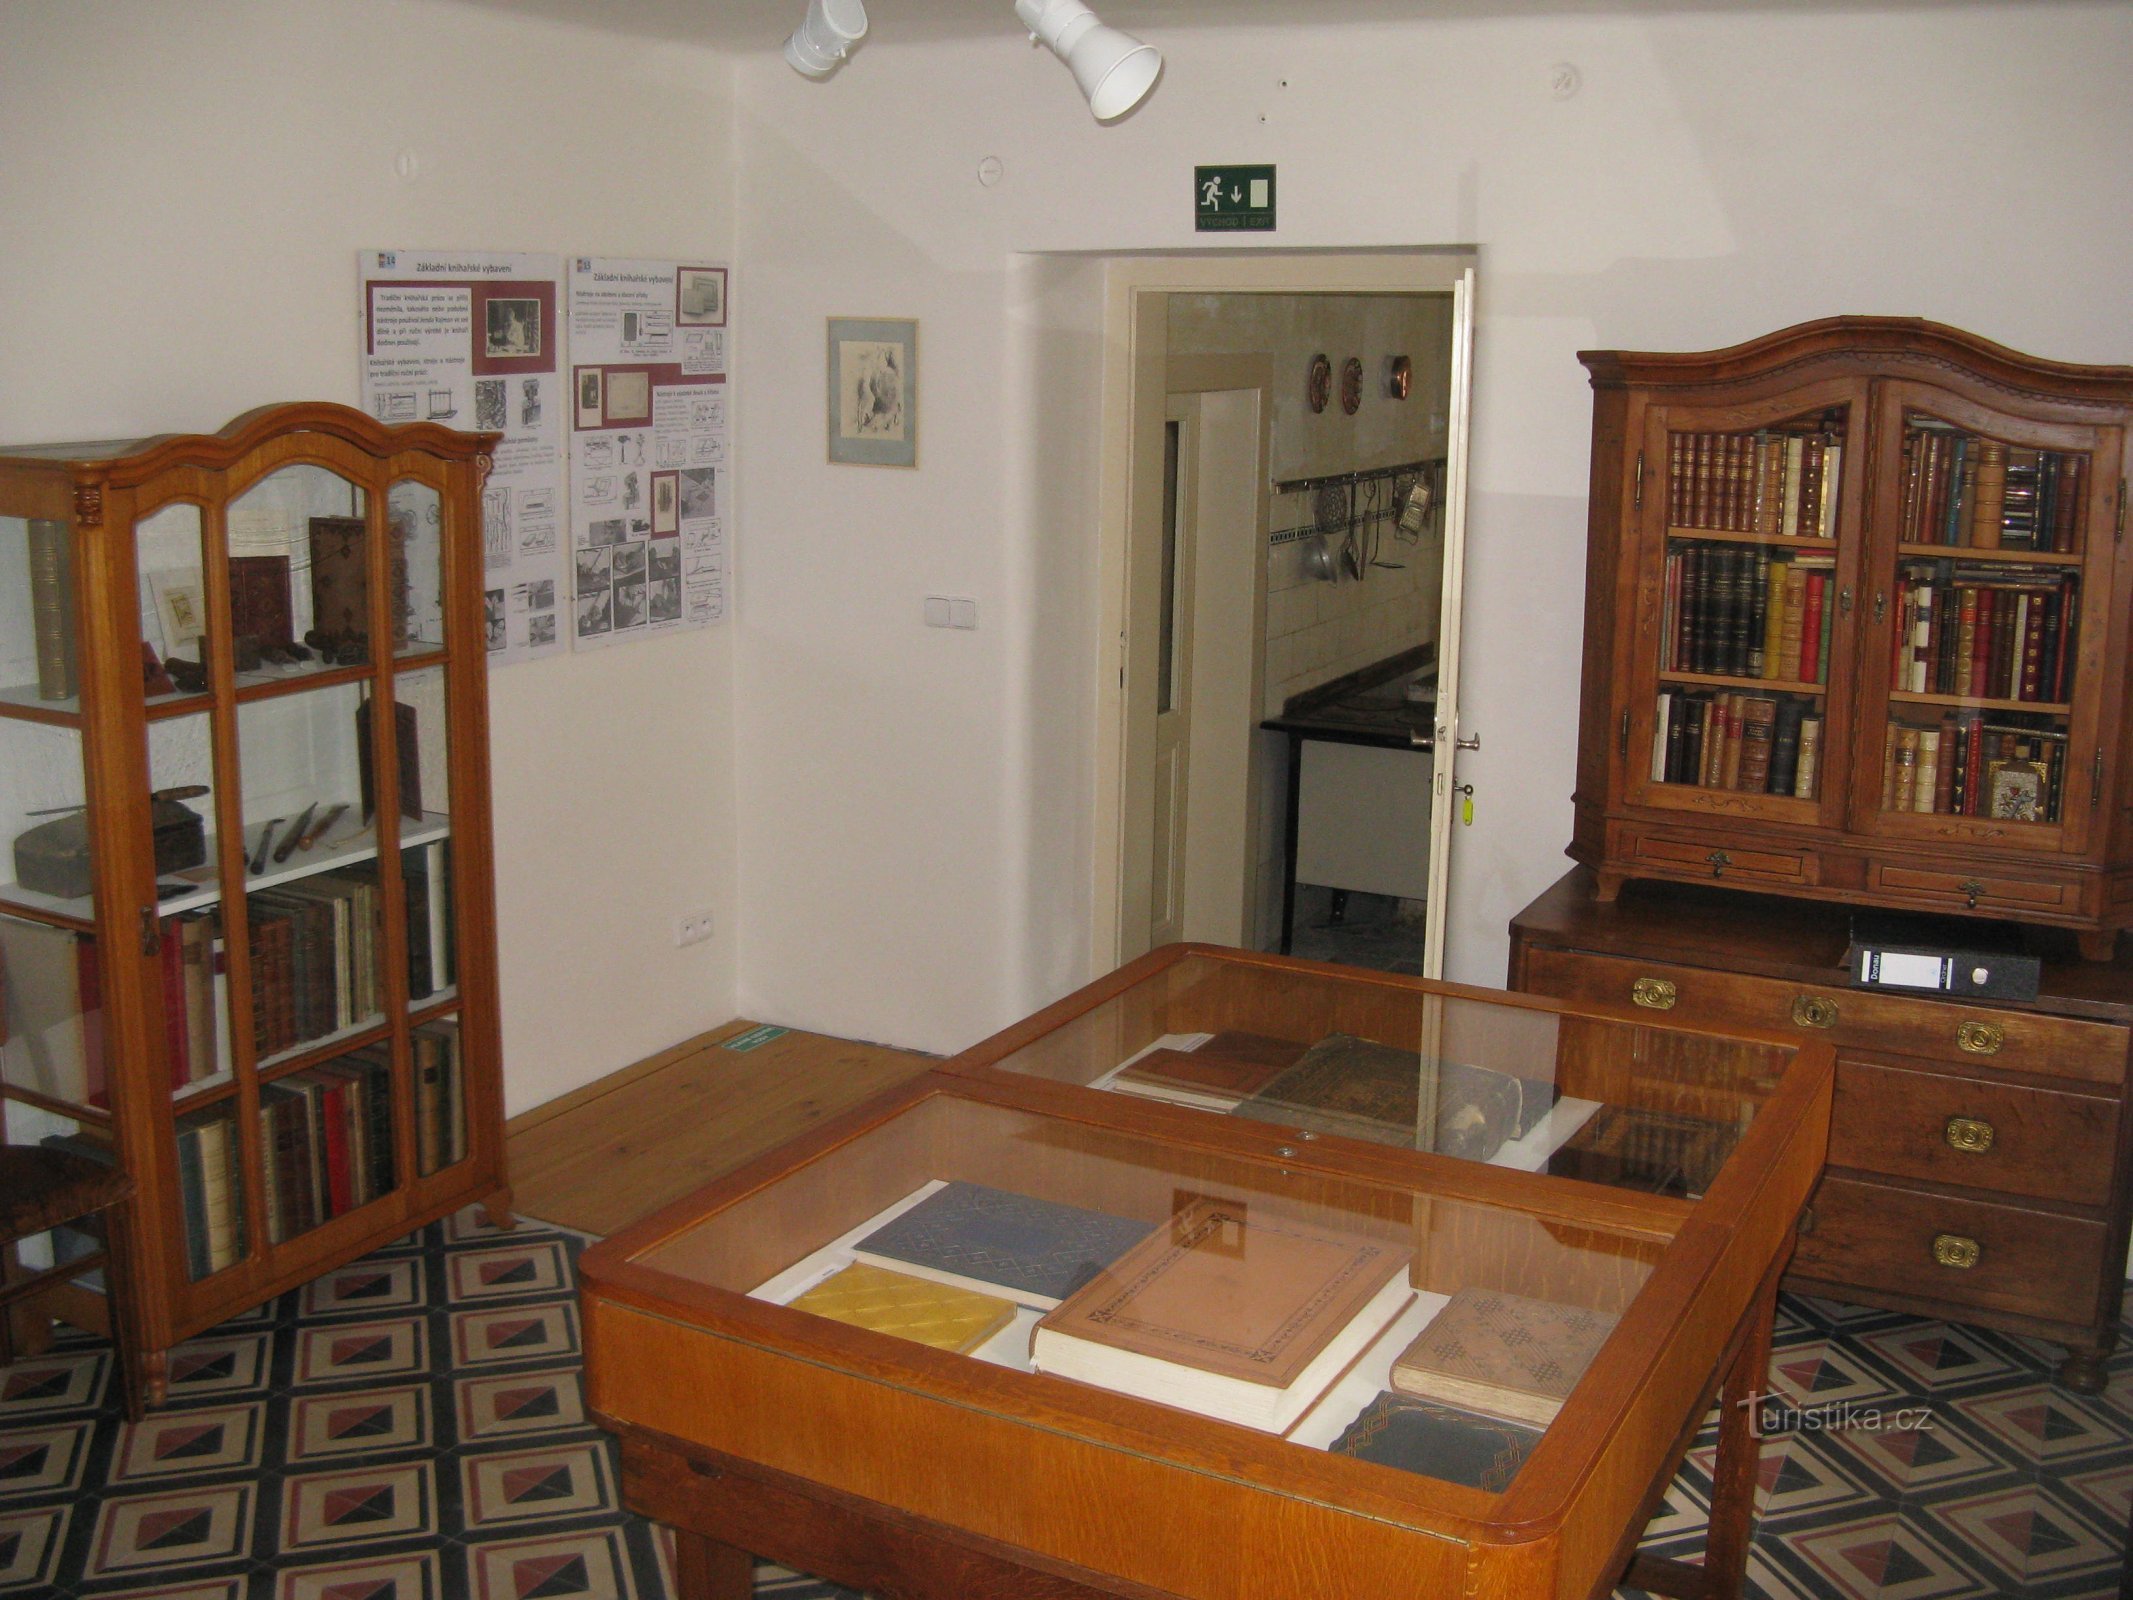 Bảo tàng làm sách cổ điển ở Rožďalovice